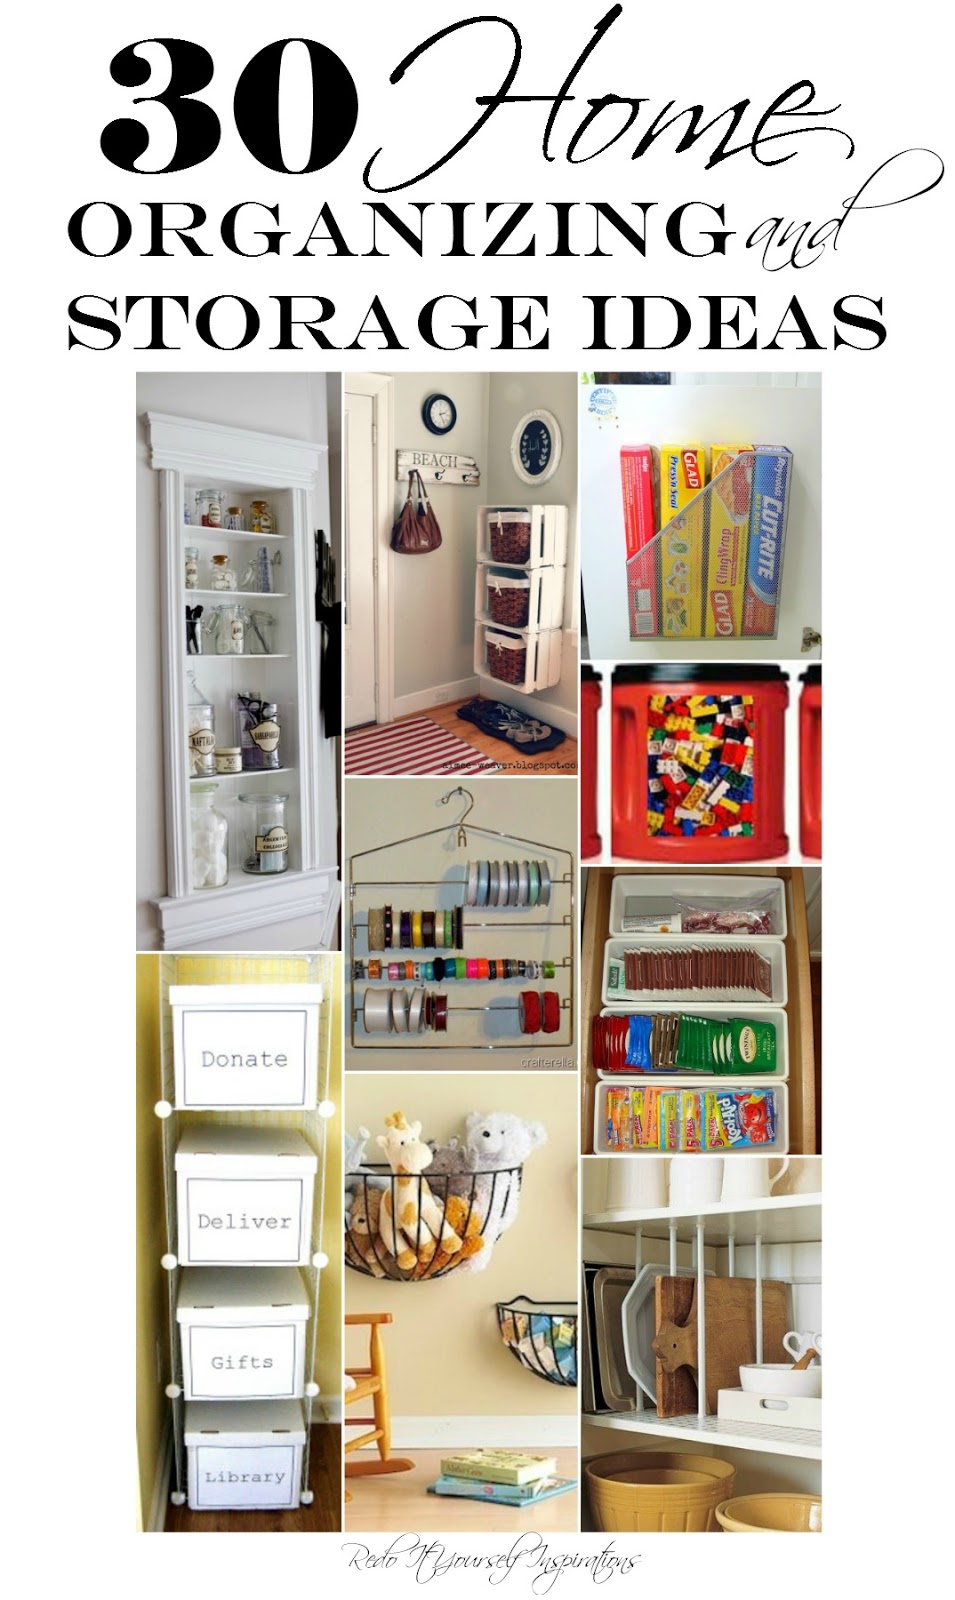 Under Sink Storage Ideas to Buy or DIY - Bob Vila